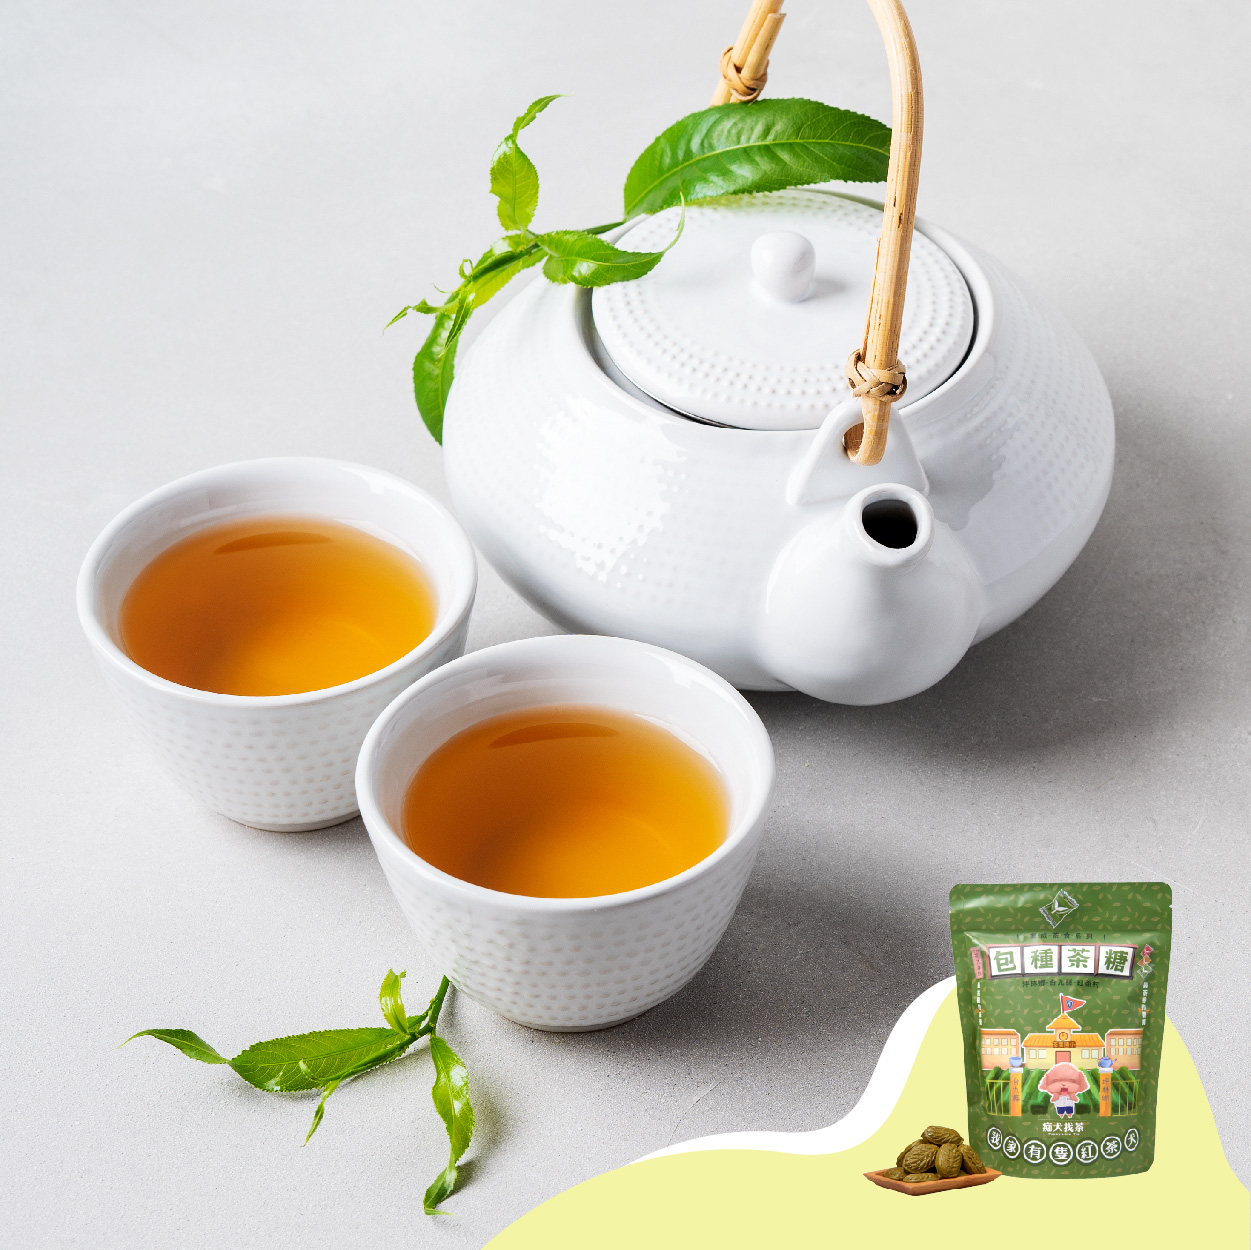 痴犬找茶 包種茶糖 擋不住的濃郁茶香 獨家工藝傳承 帶給你豐富的甜蜜口味